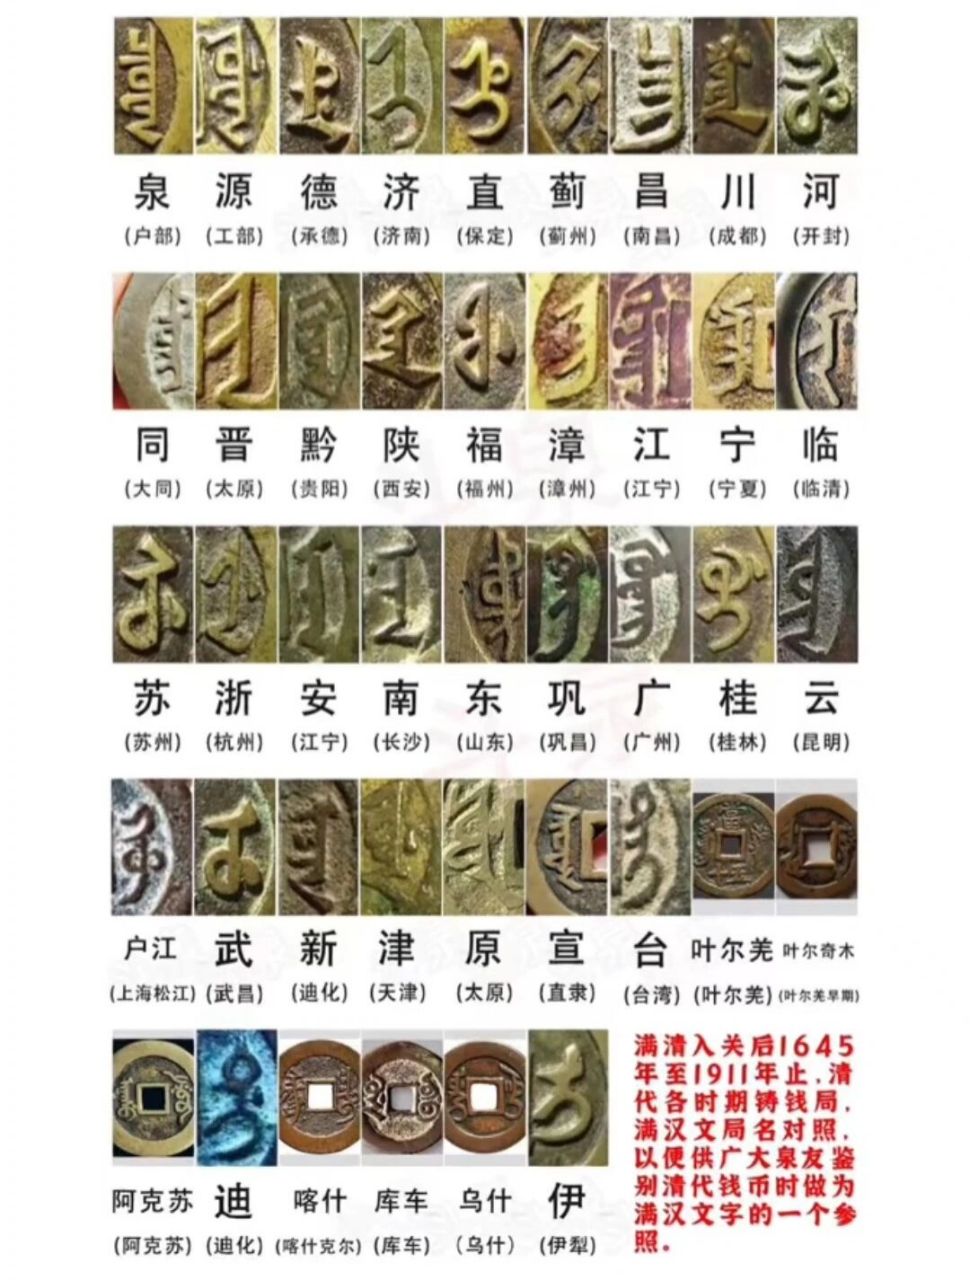 满文中文对照表 汉文图片